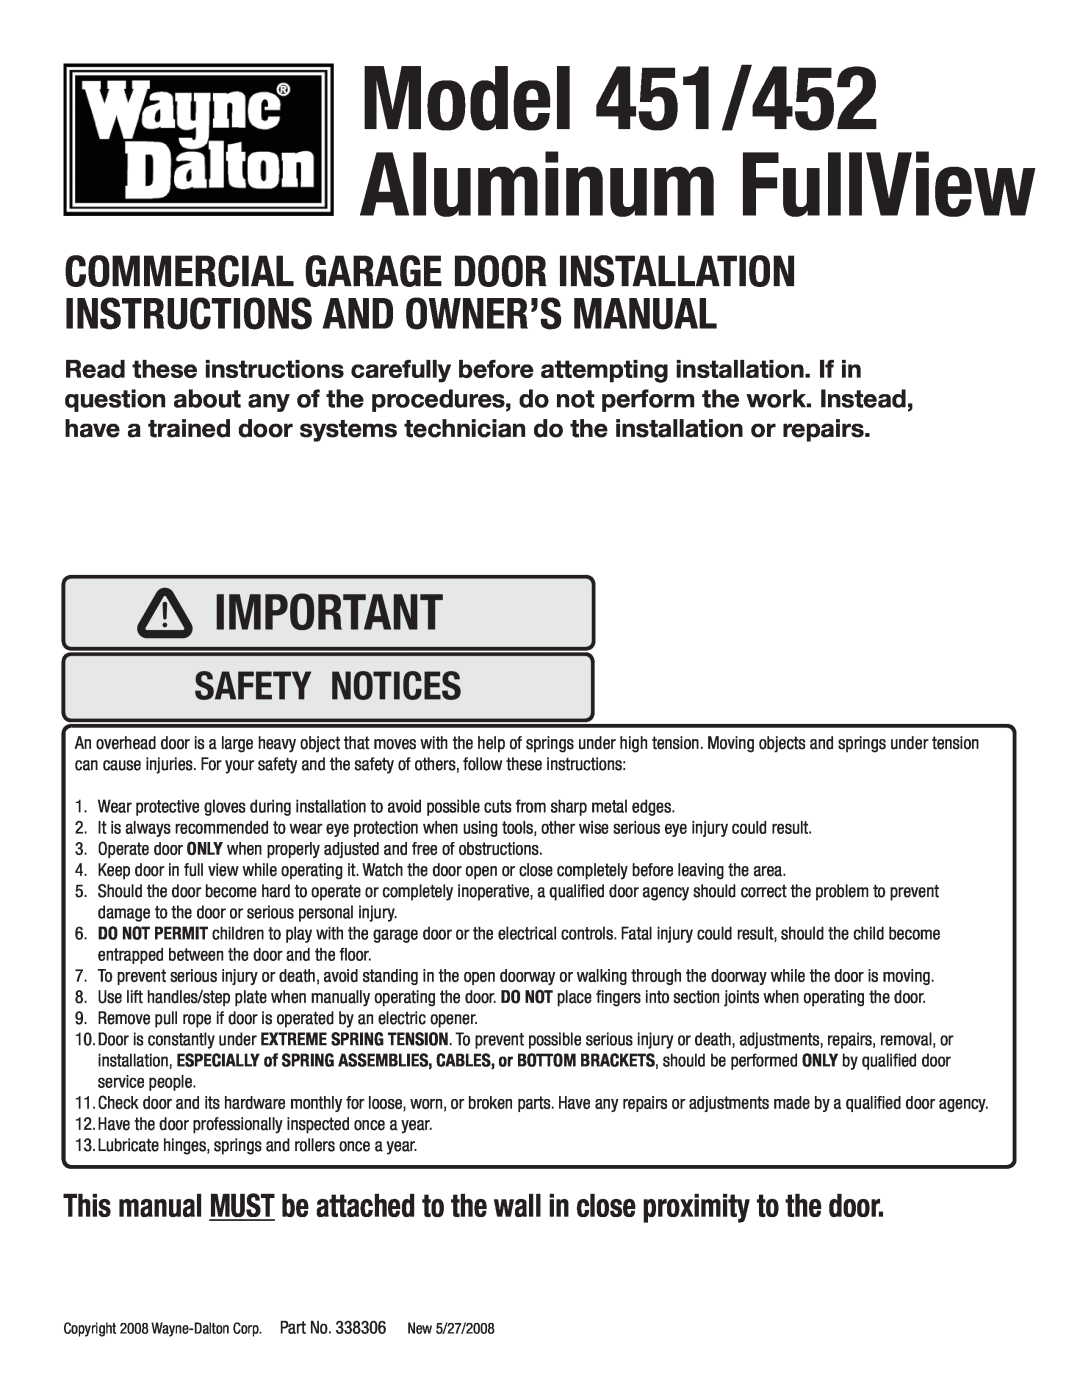 Wayne-Dalton 452 manual Sectional Door Systems, 451, Aluminum Full-View, A L U M I N U M F U L L V I E W 